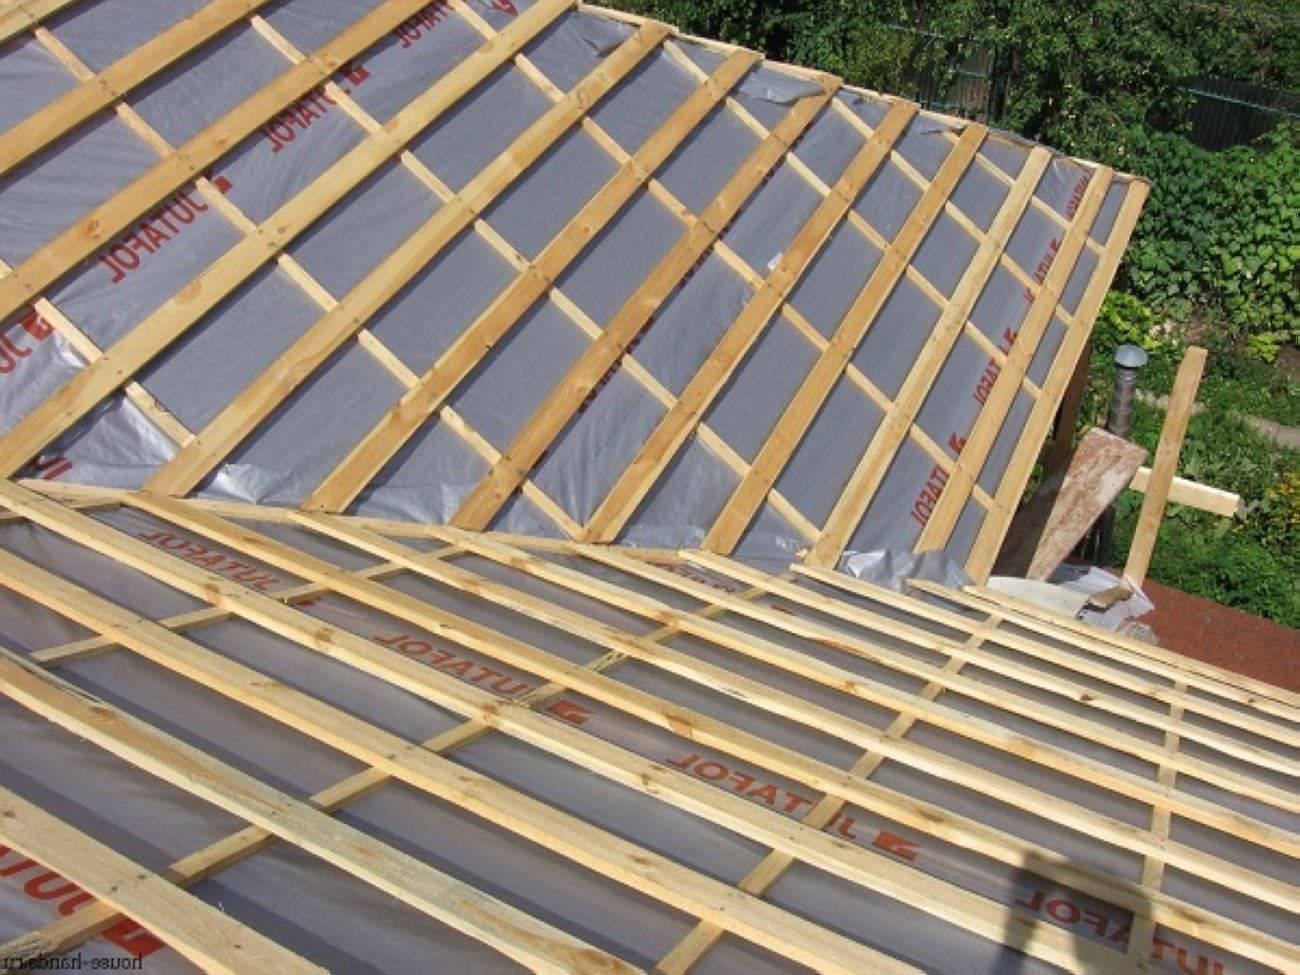 Гидроизоляция крыши дома под металлочерепицу, какую выбрать — укладка и монтаж (видео, фото)